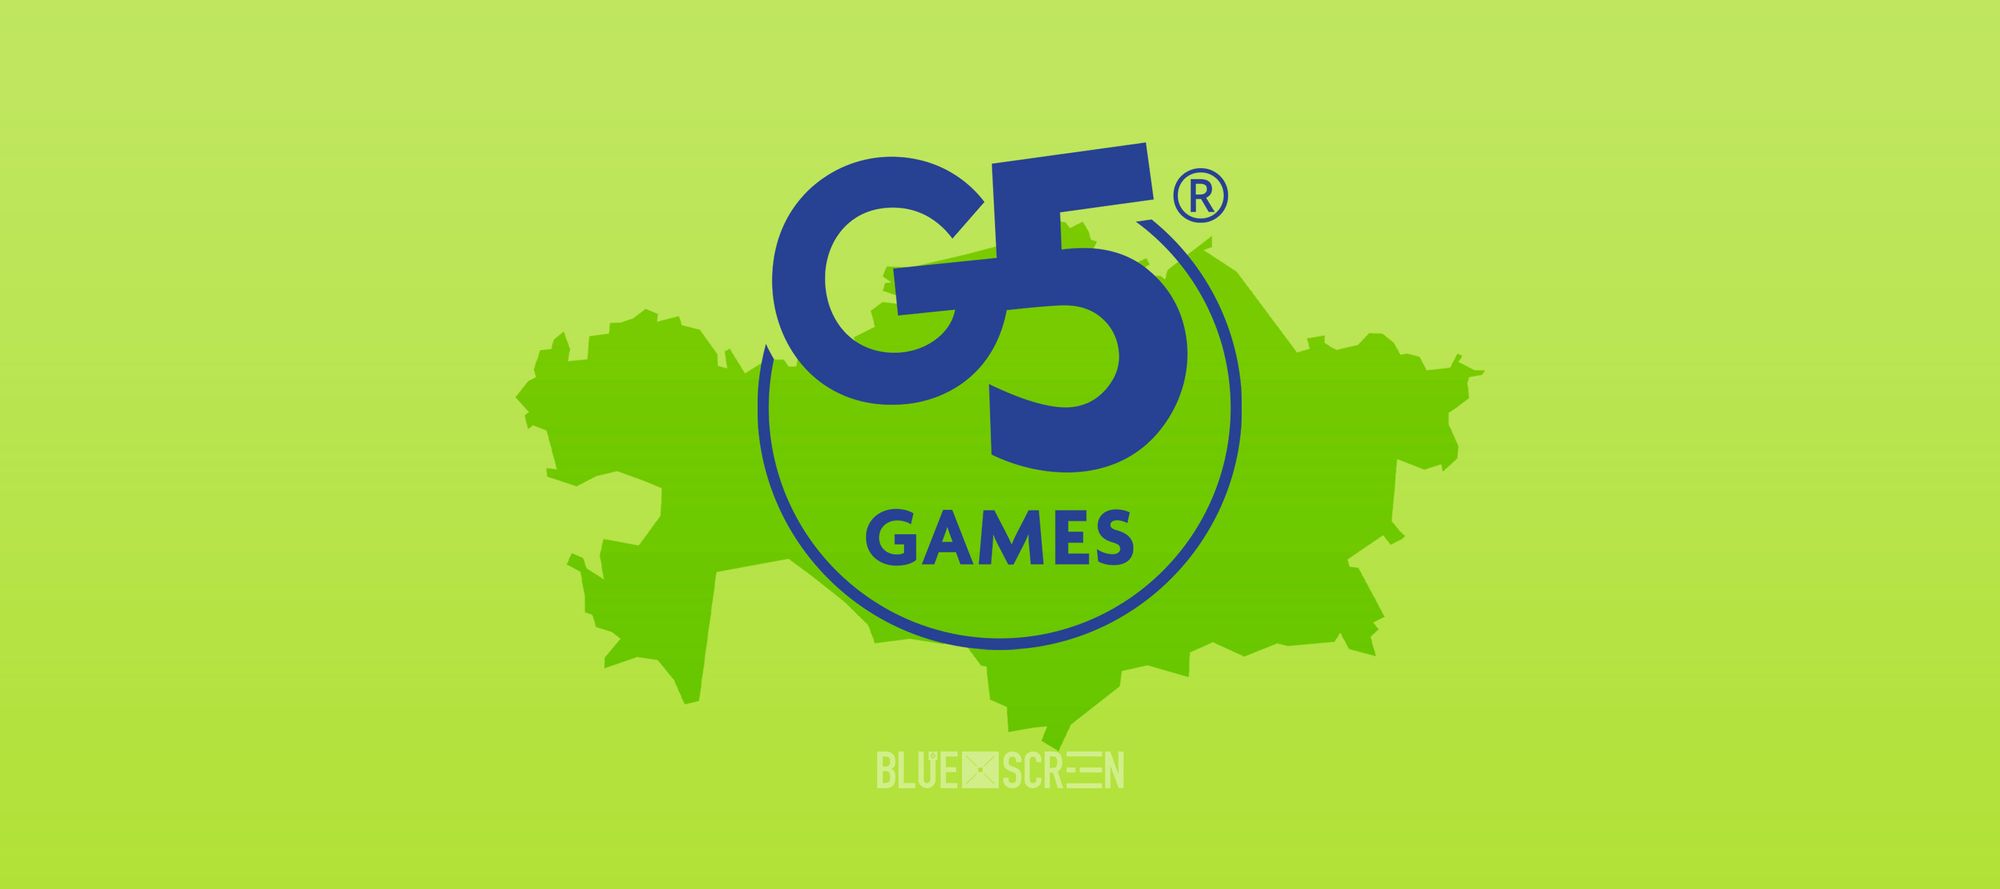 Разработчик мобильных игр G5 Games открыл офис в Казахстане